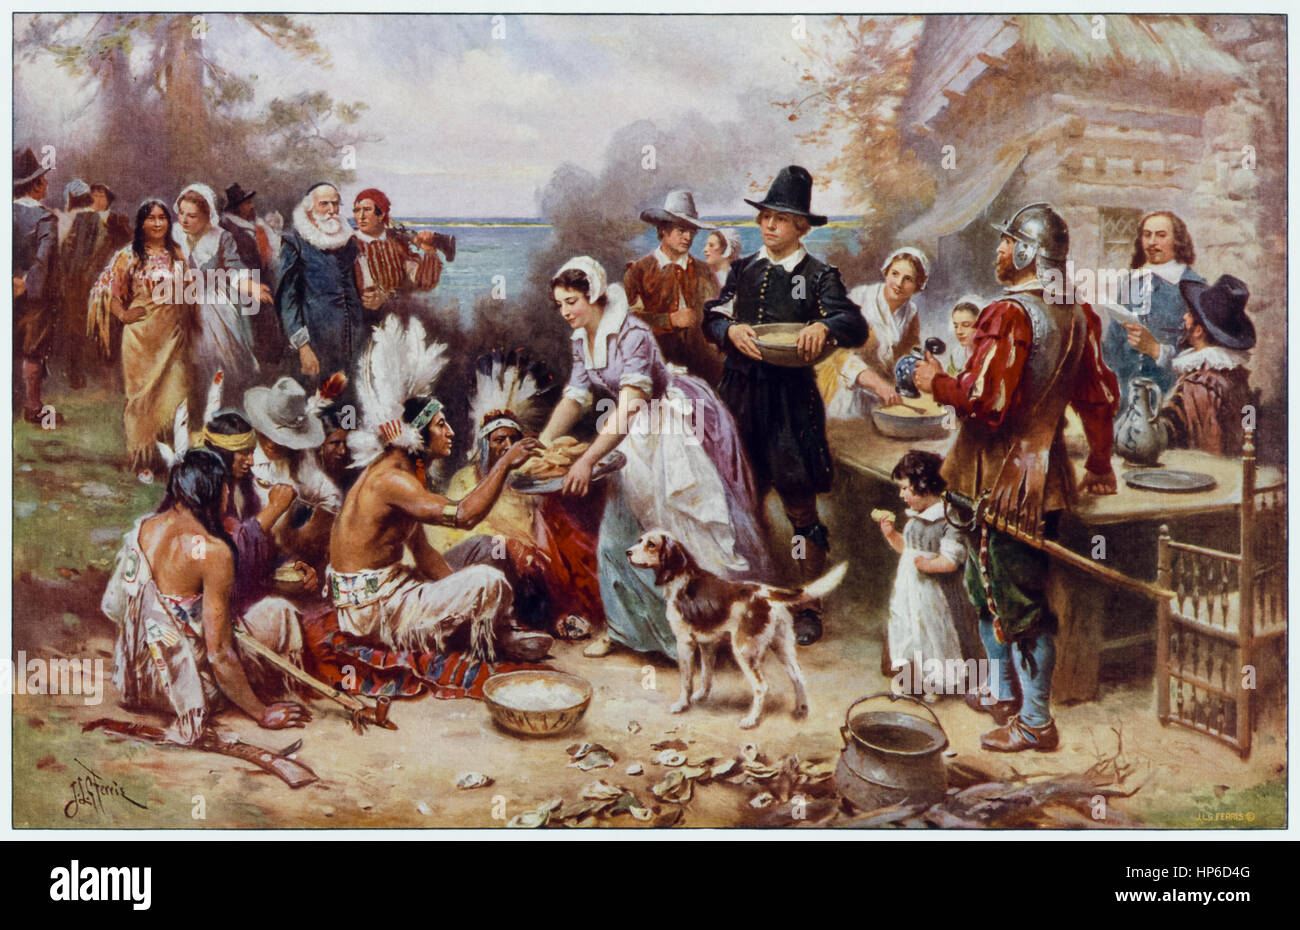 "El Primer Día de Acción de Gracias 1621" por Jean Leon Gerome Ferris (1863-1930), artista estadounidense que pintó muchas escenas de la historia americana; en este escenario idealizado los nativos americanos y los peregrinos comparten una comida. Foto de stock